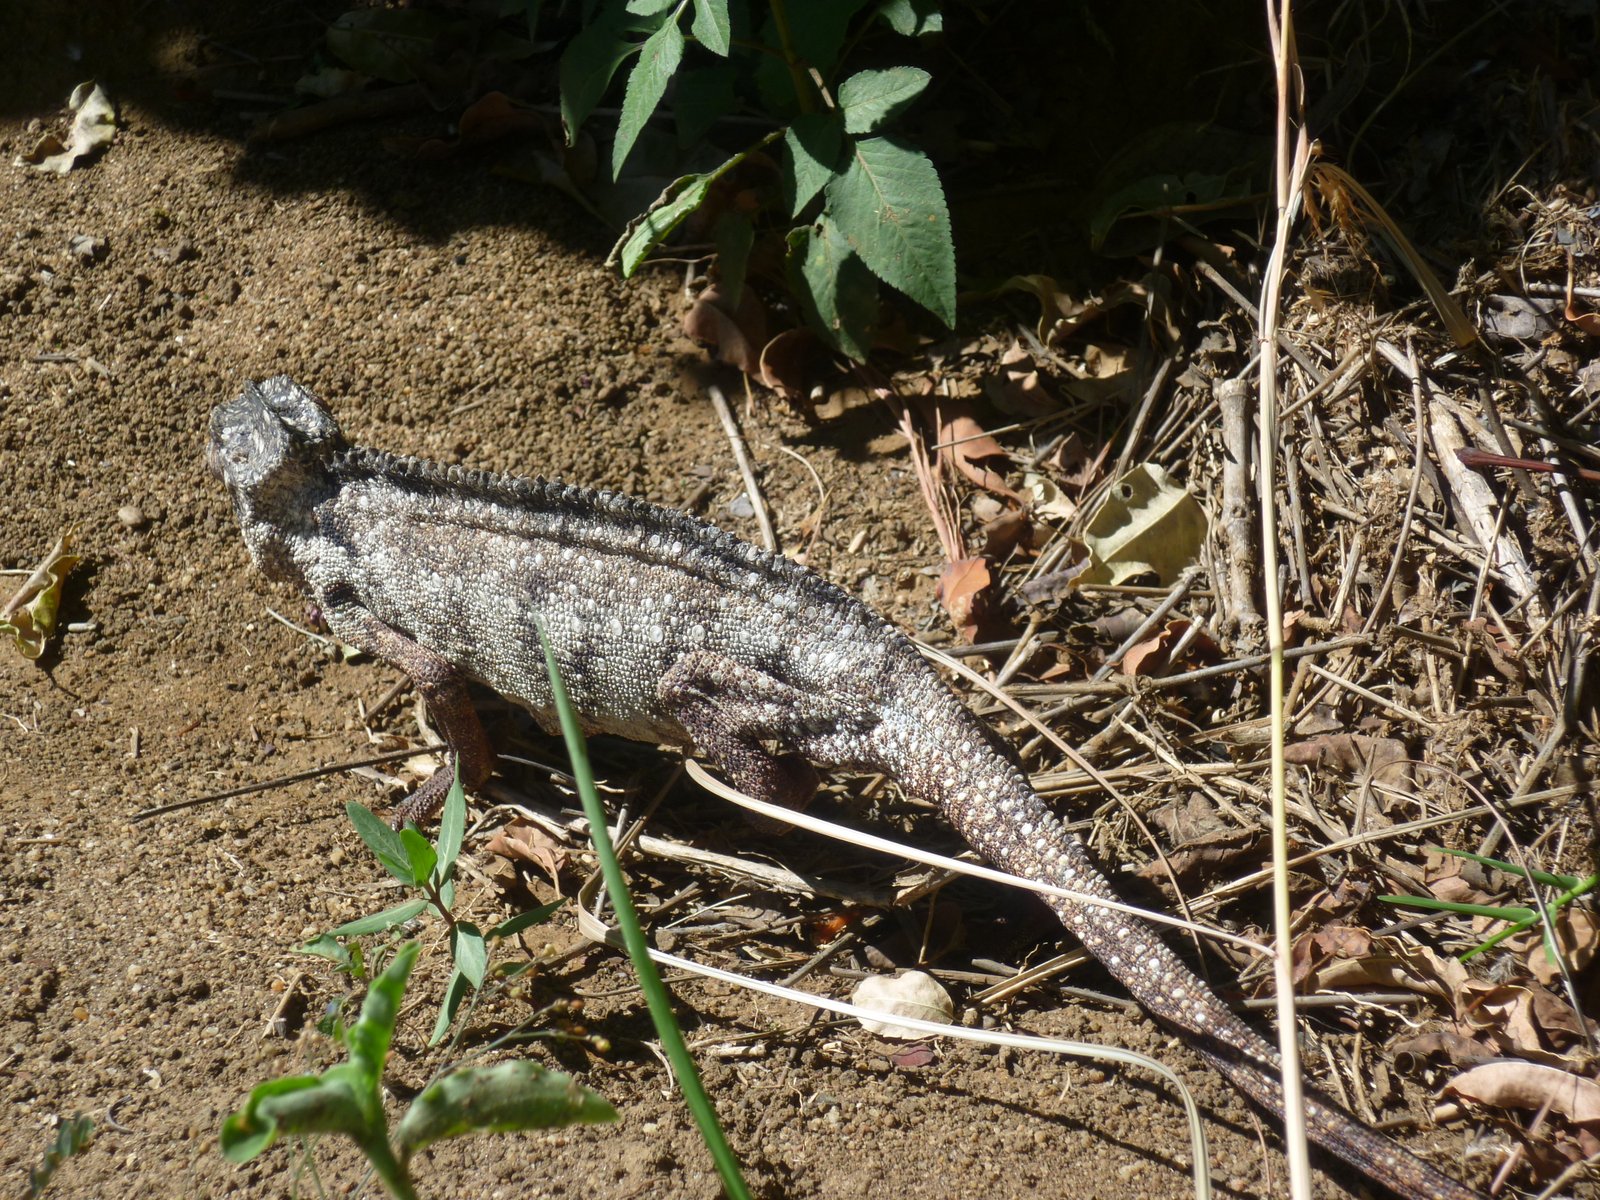 Die Chamäleons sind eierlegende und insektenfressende Reptilien. In Madagaskar gibt es mindestens 70 endemische Arten von Chamäleons.